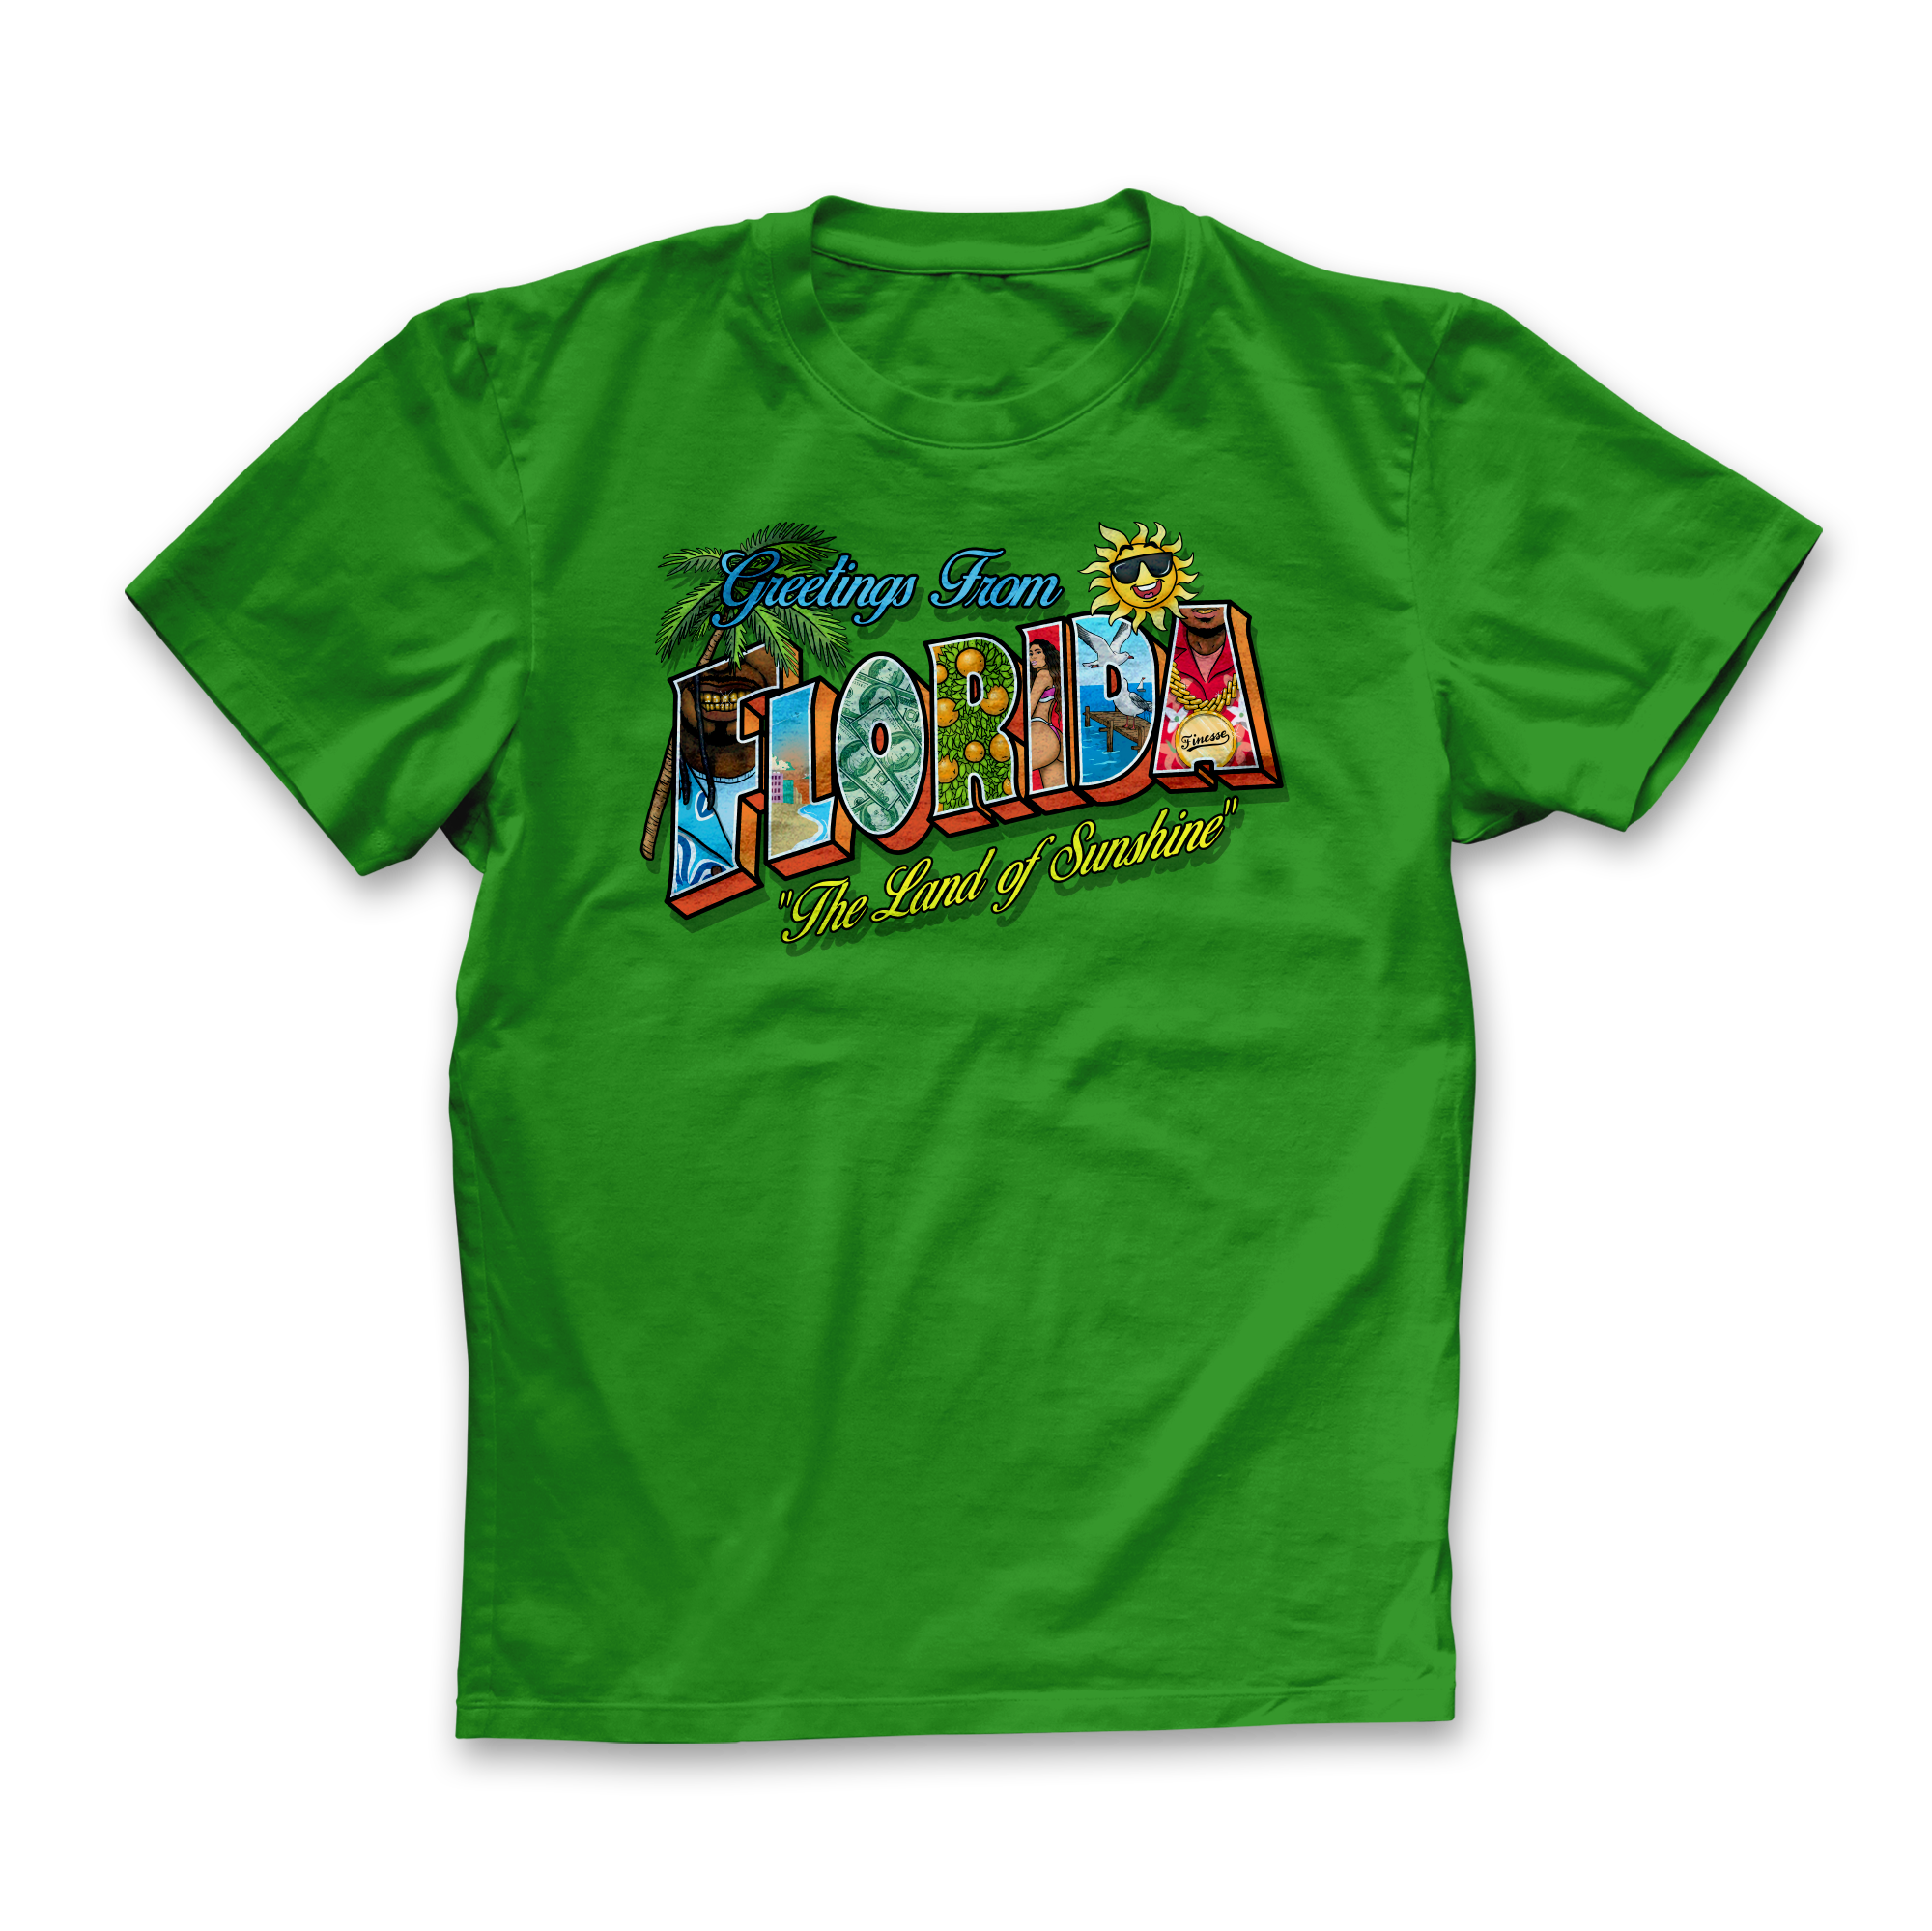 GREEN APPLE Postcard T-Shirt FRONT